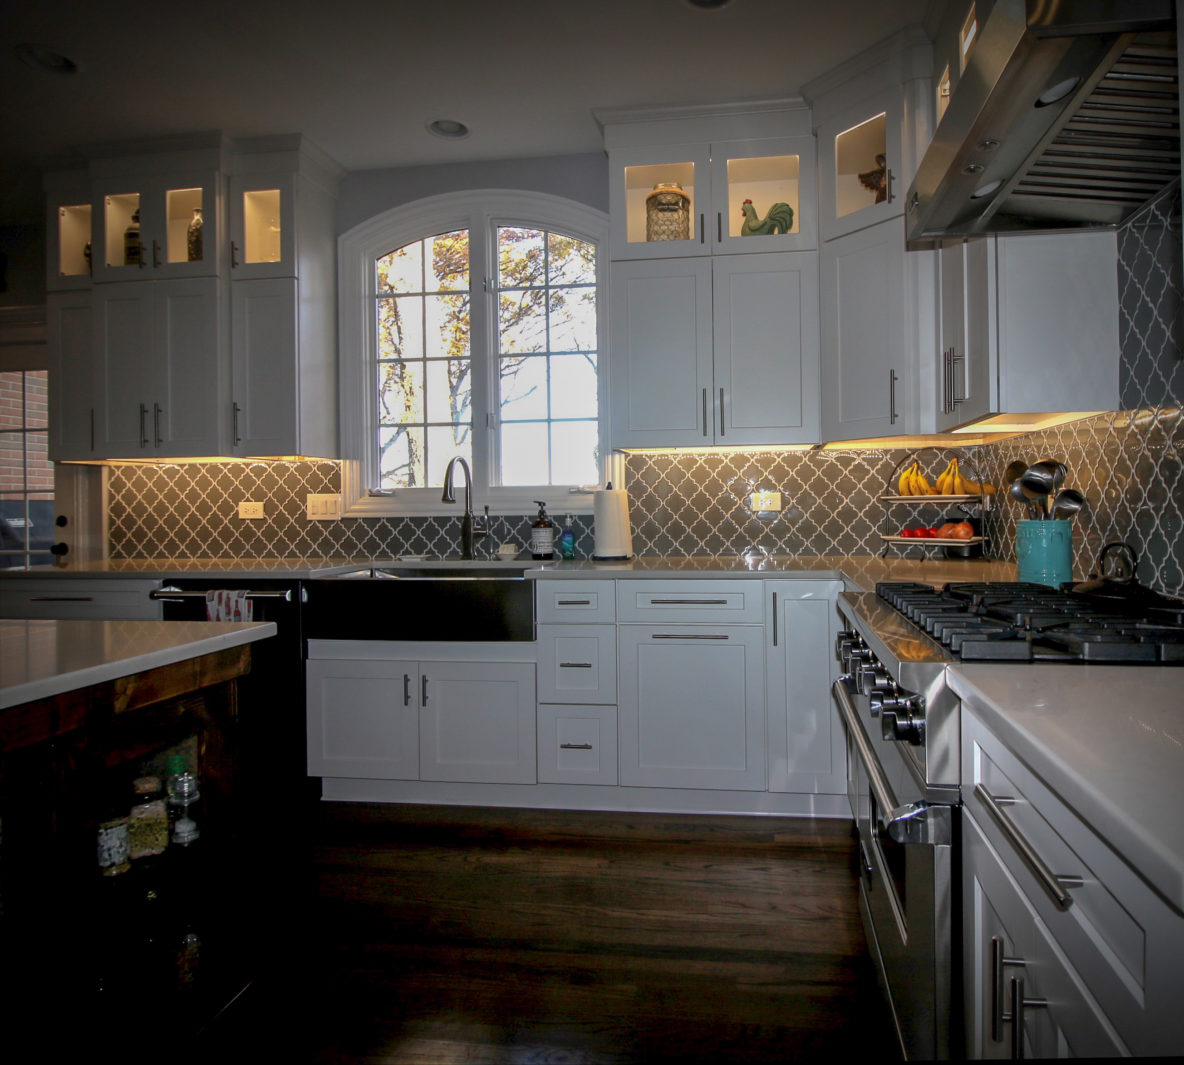 Kitchen Remodel with Custom Backsplash and Cabinet Under-lighting